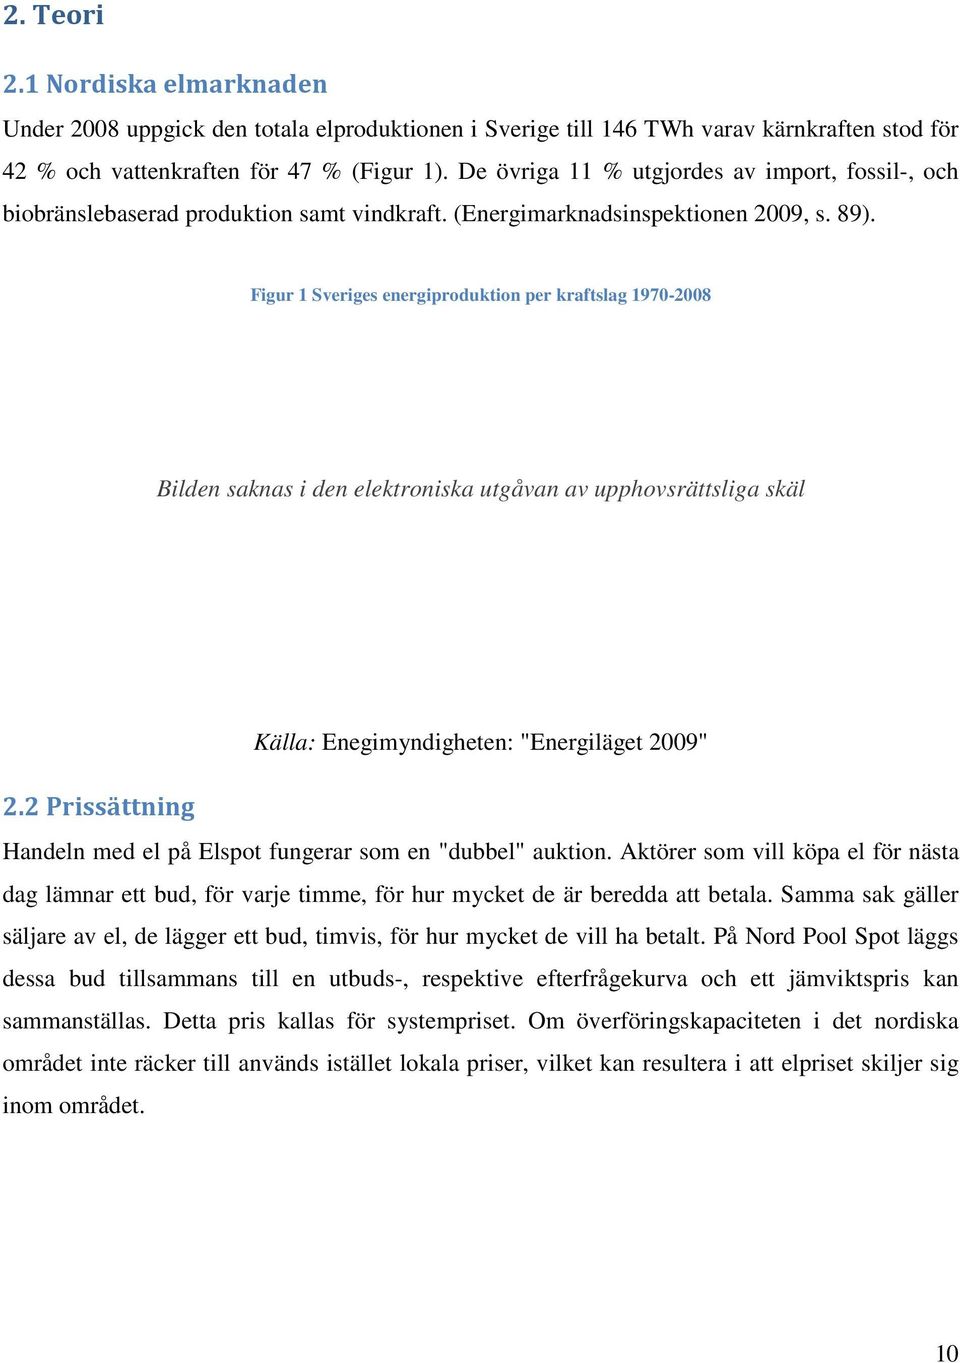 Figur 1 Sveriges energiproduktion per kraftslag 1970-2008 Bilden saknas i den elektroniska utgåvan av upphovsrättsliga skäl Källa: Enegimyndigheten: "Energiläget 2009" 2.